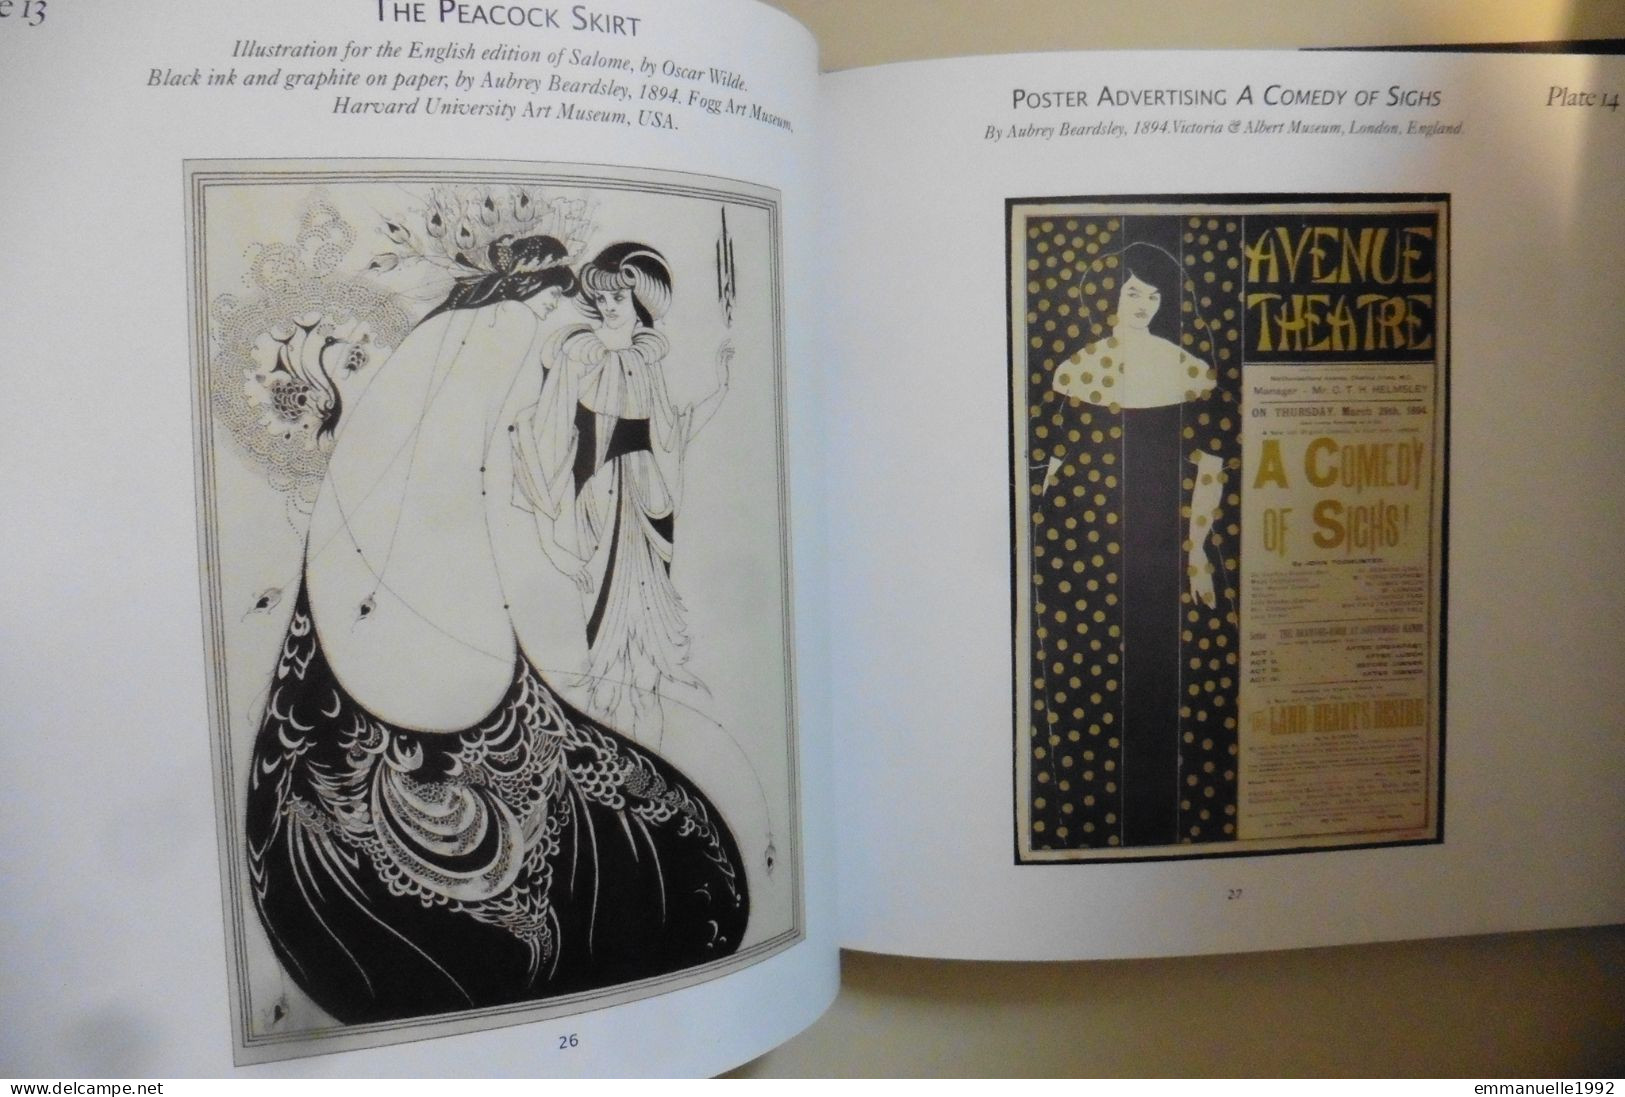 Art Nouveau by Gordon Kerr 2009 Pulteney Press - Mackintosh Hoffmann Majorelle Klimt etc - English text